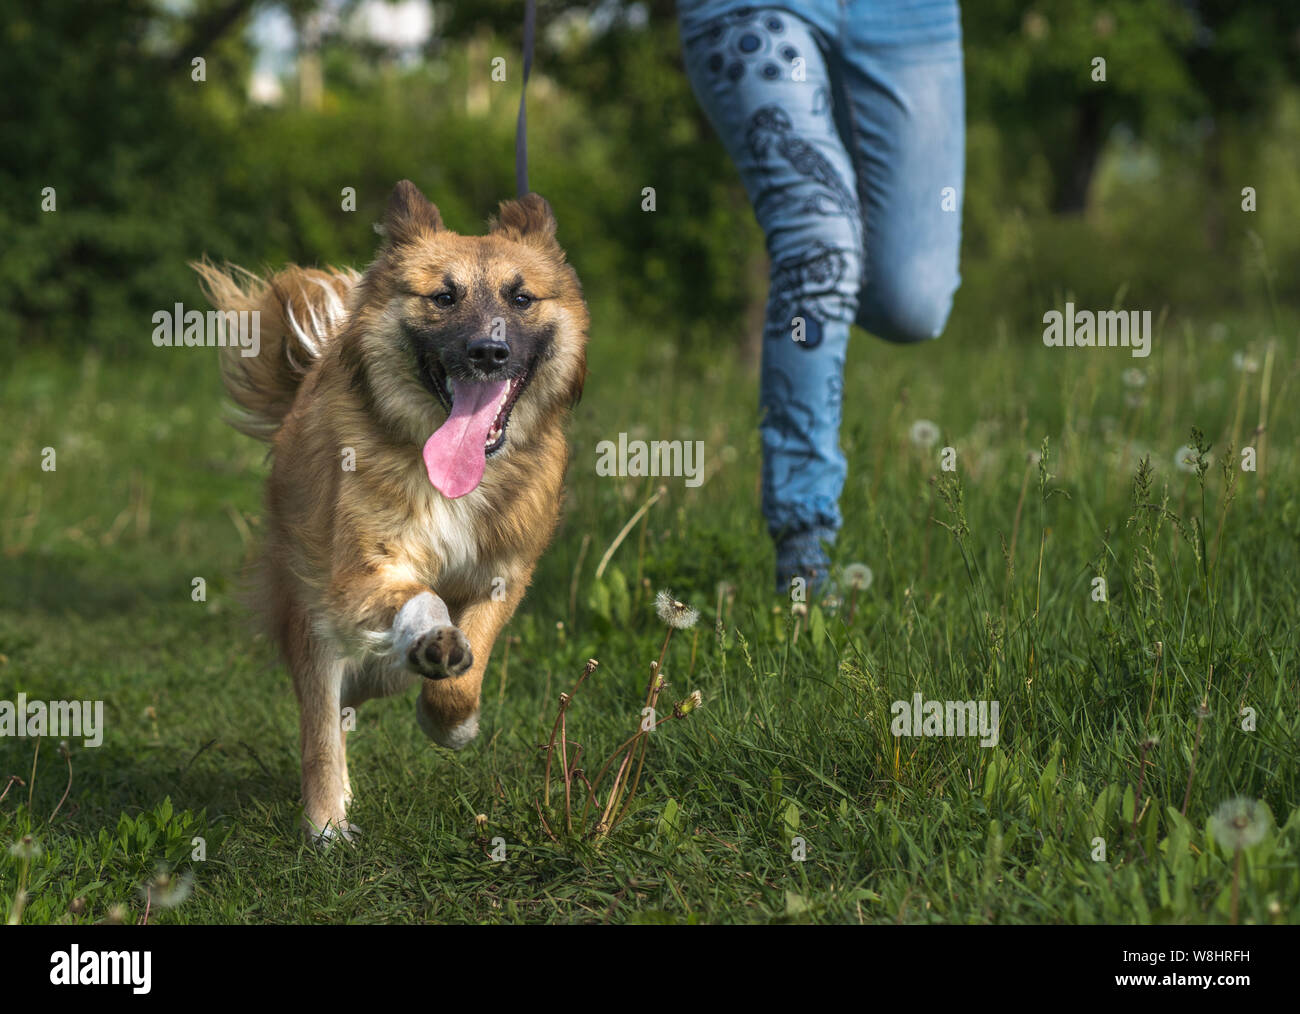 Ein Mädchen läuft mit einer gemischten Rasse Hund beim Spaziergang mit dem Hund im Park. Glücklicher Hund läuft und lächelnd. Lustiger Moment des laufenden Hund. Stockfoto